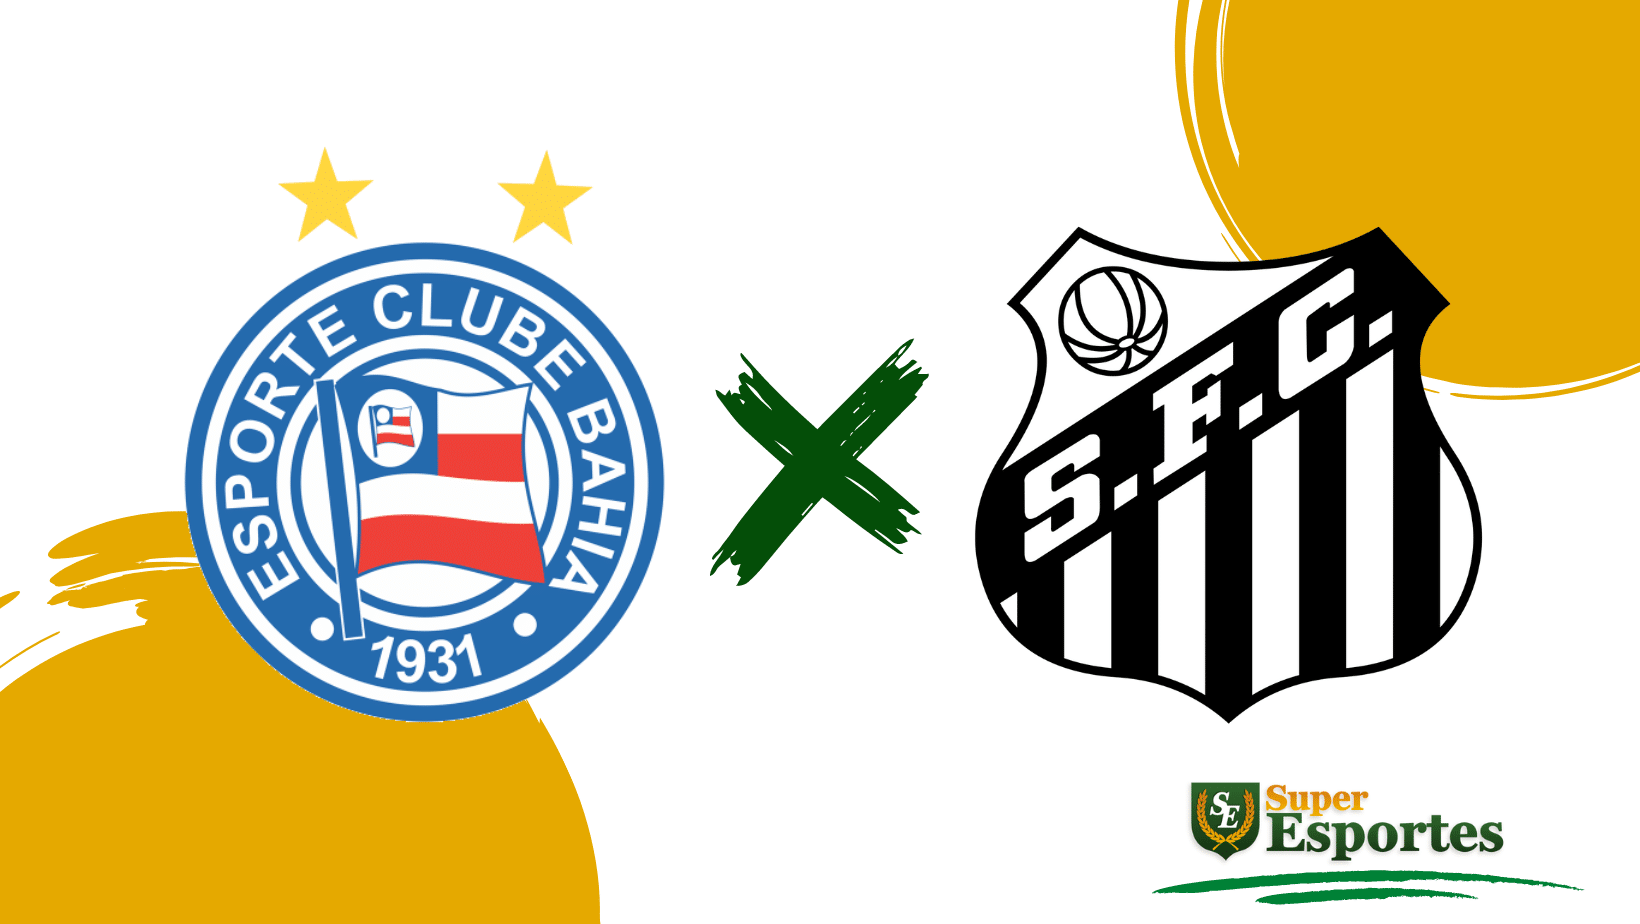 Veja jogo de hoje pelo Campeonato Brasileiro - 21 de maio de 2023